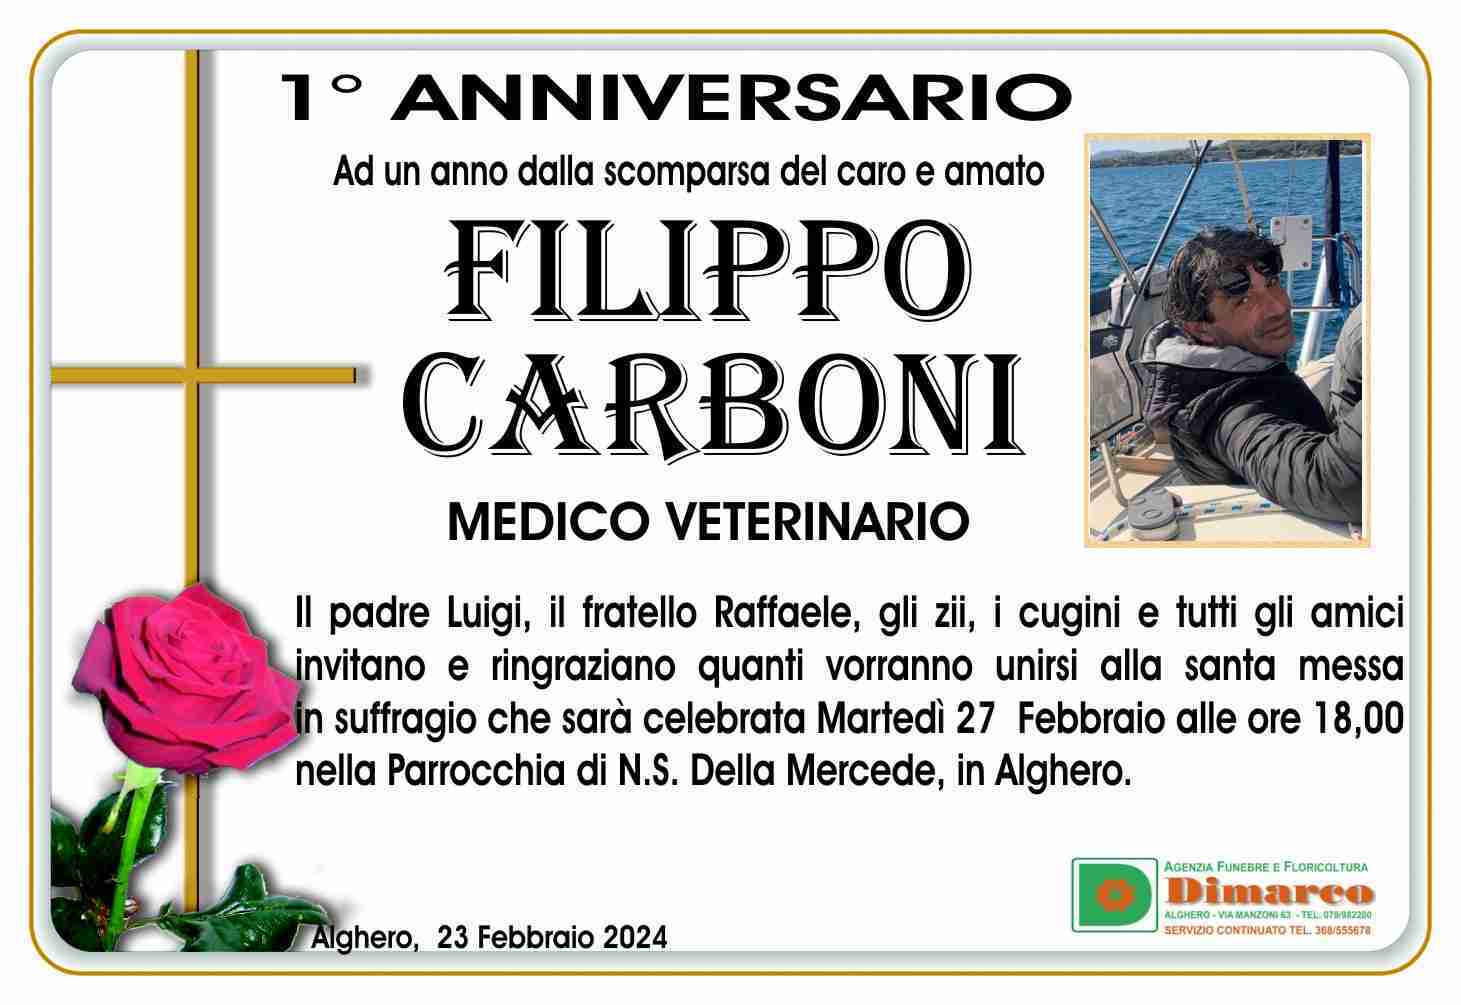 Filippo Carboni